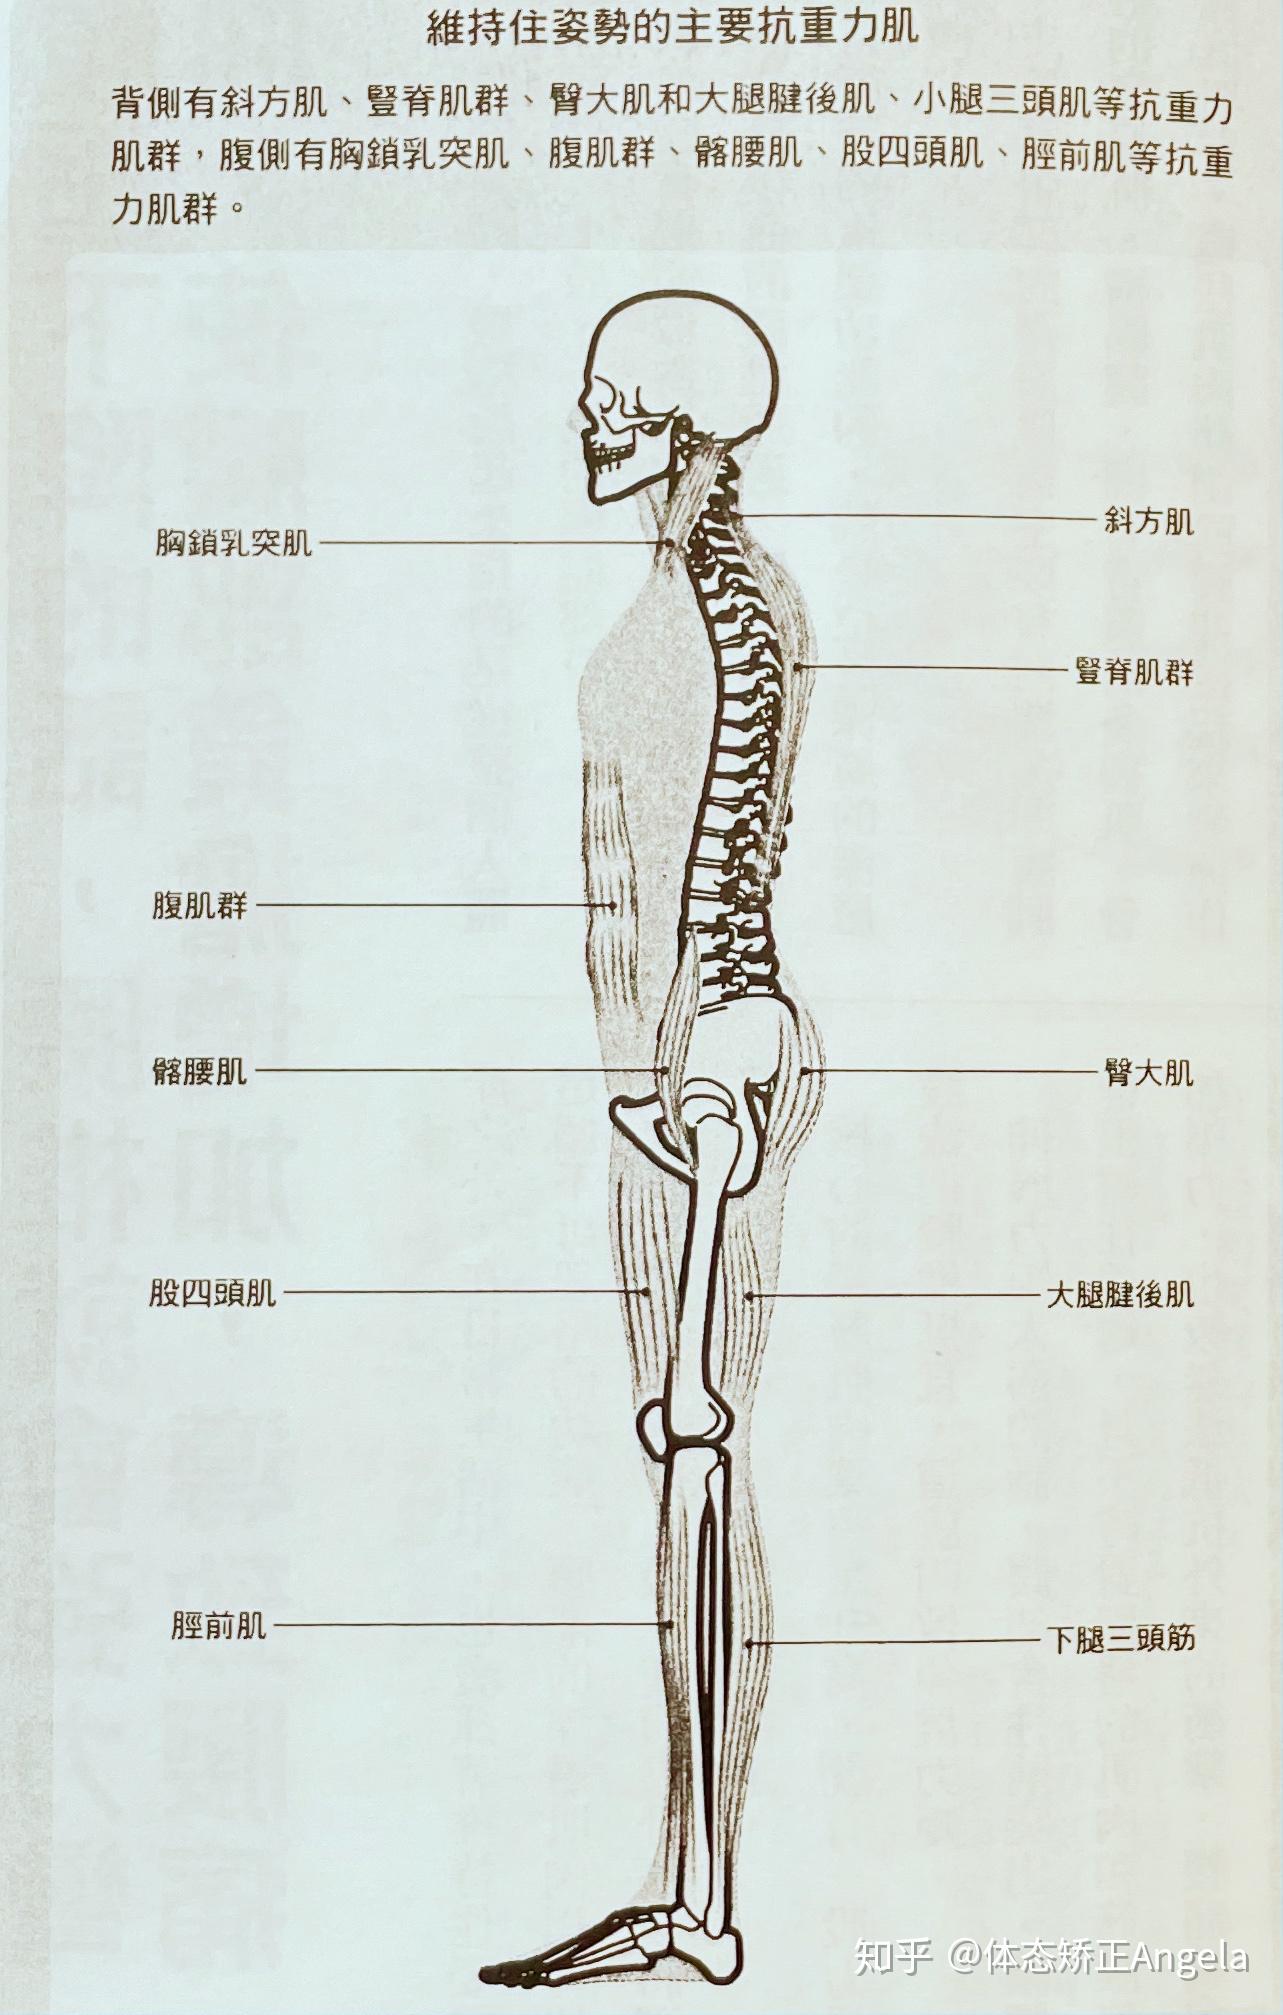 抗重力肌当中最重要的是位于背部的肌肉,因为腹部包裹着很重要的内脏